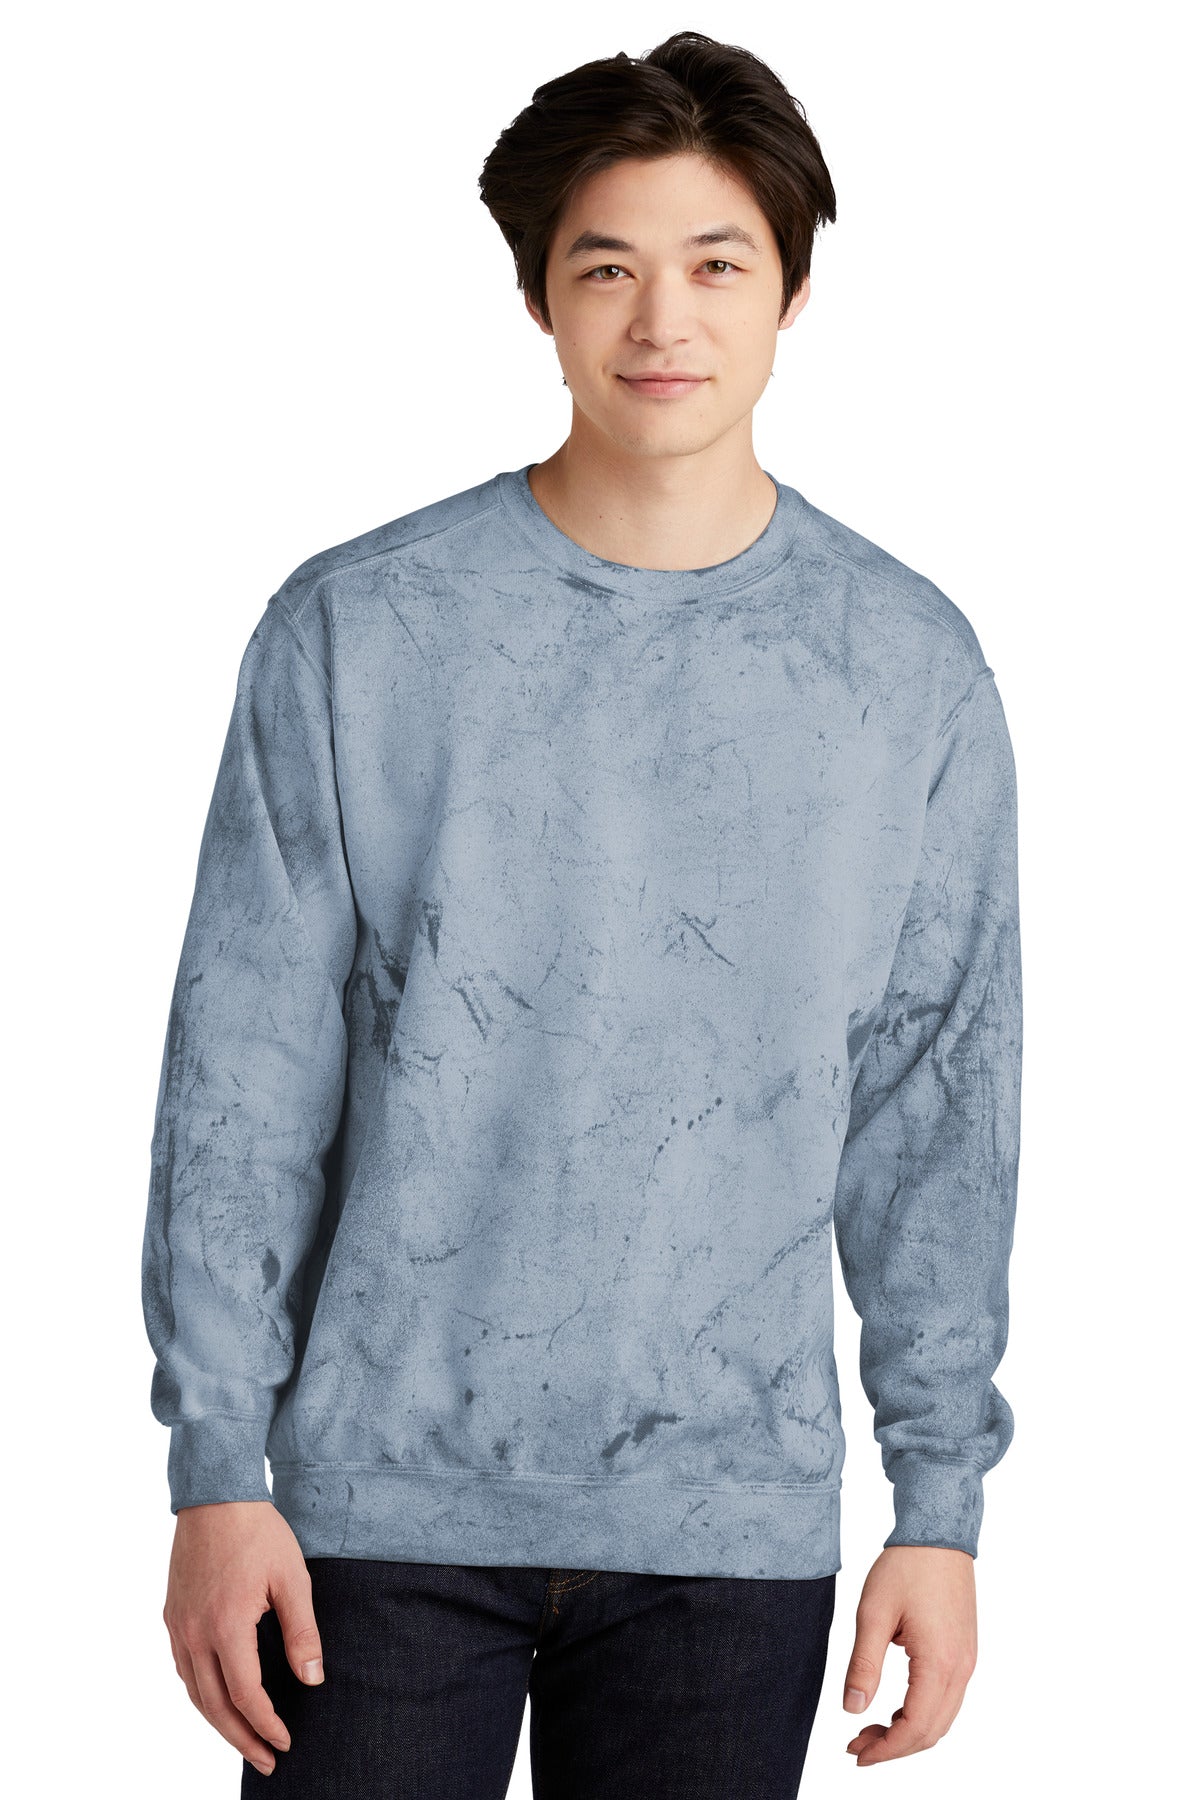 Sweatshirts/Fleece Ocean Comfort Colors